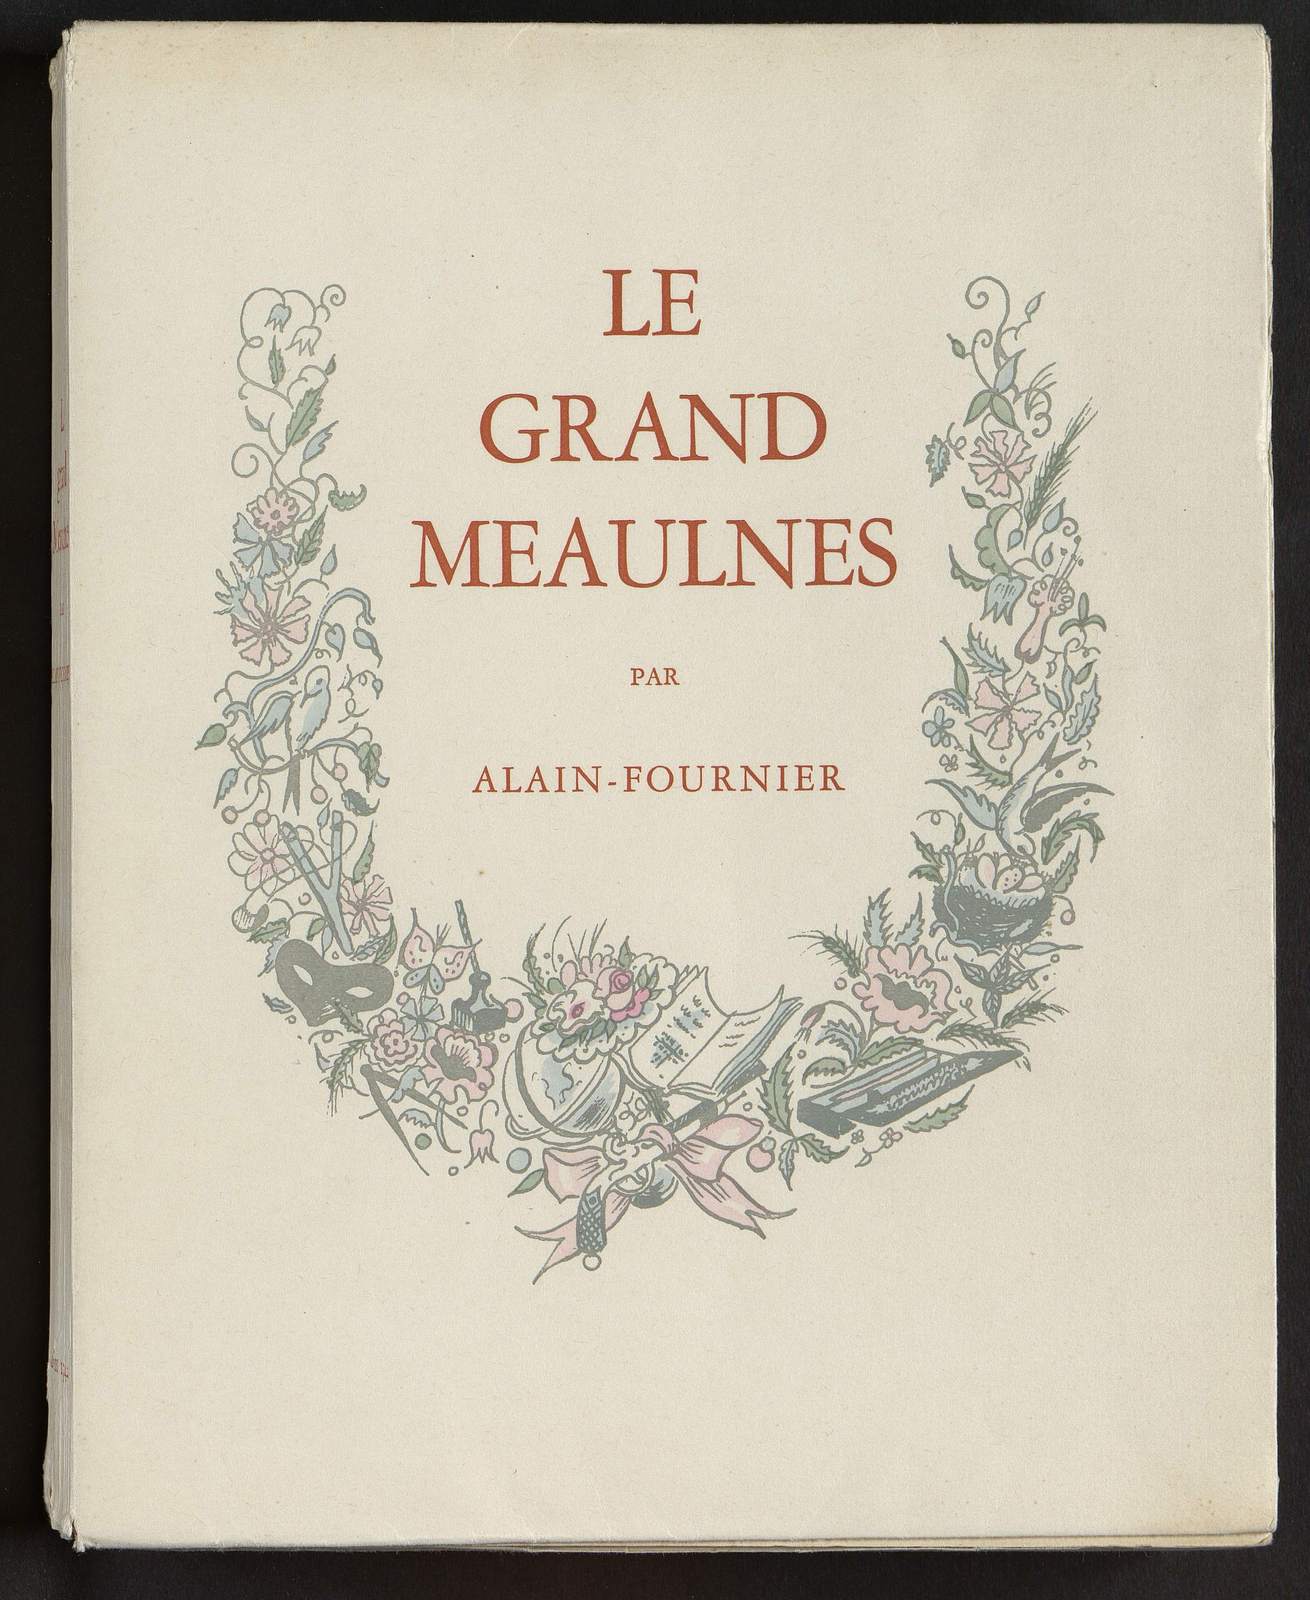 Le Grand Meaulnes, Le grand jeu, illustré par Dignimont, Emile-Paul Frères, 1942